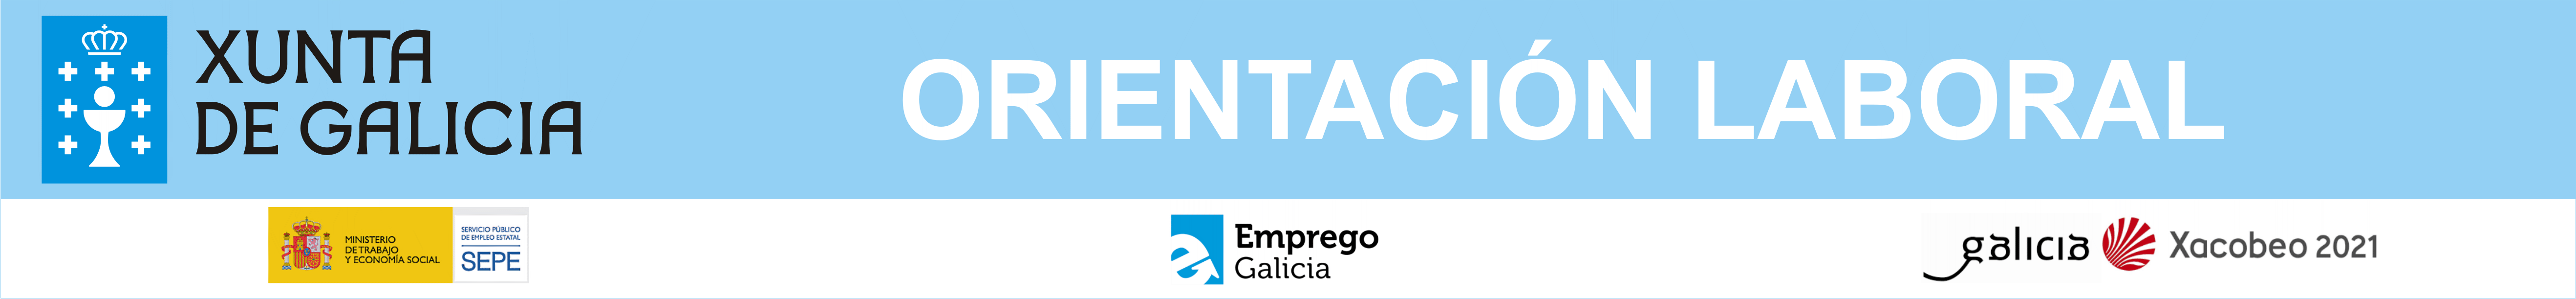 Orientación Laboral Xunta de Galicia